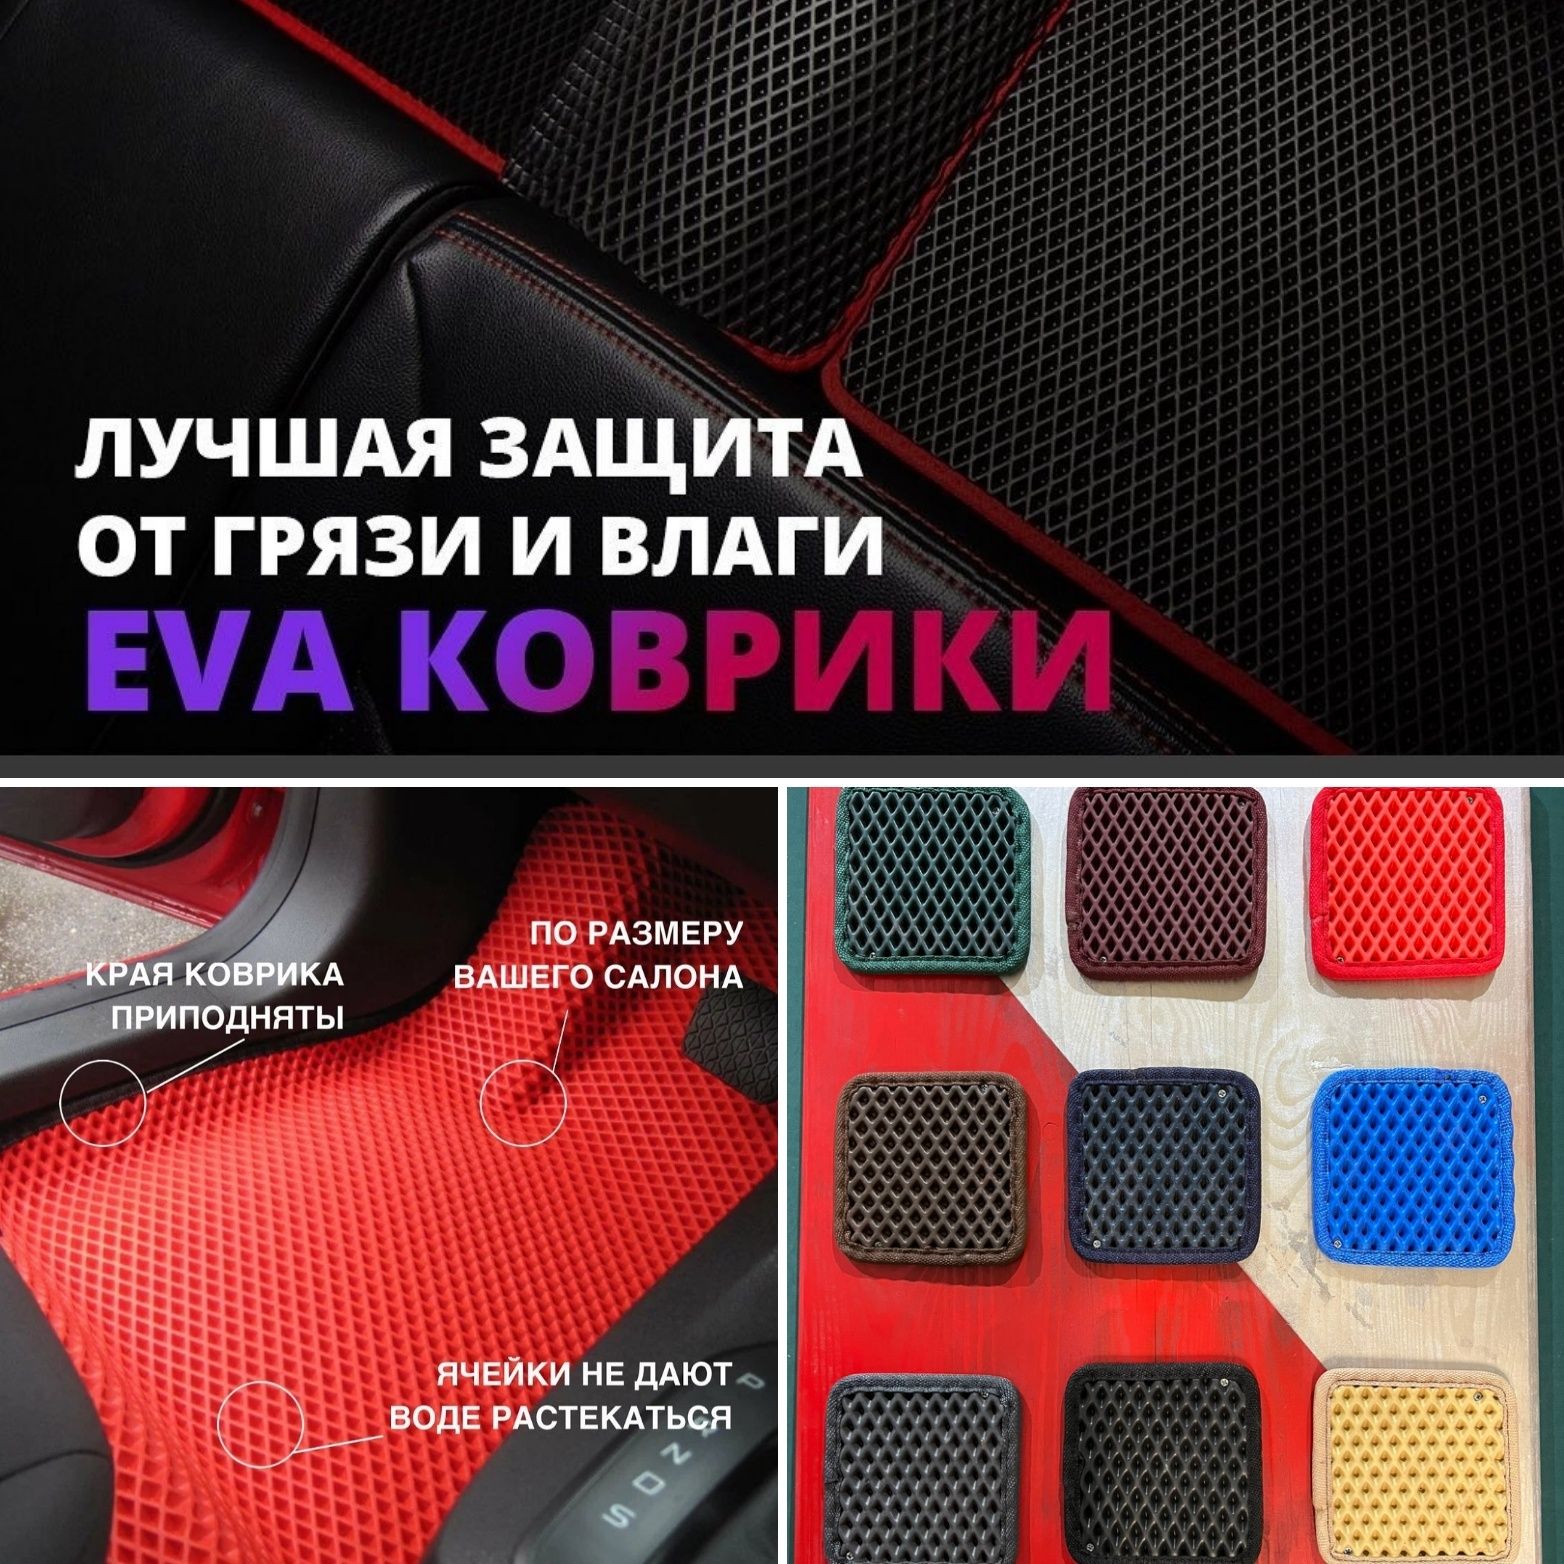 Ева полики/коврики для авто /Эва коврики от Российского производителя.